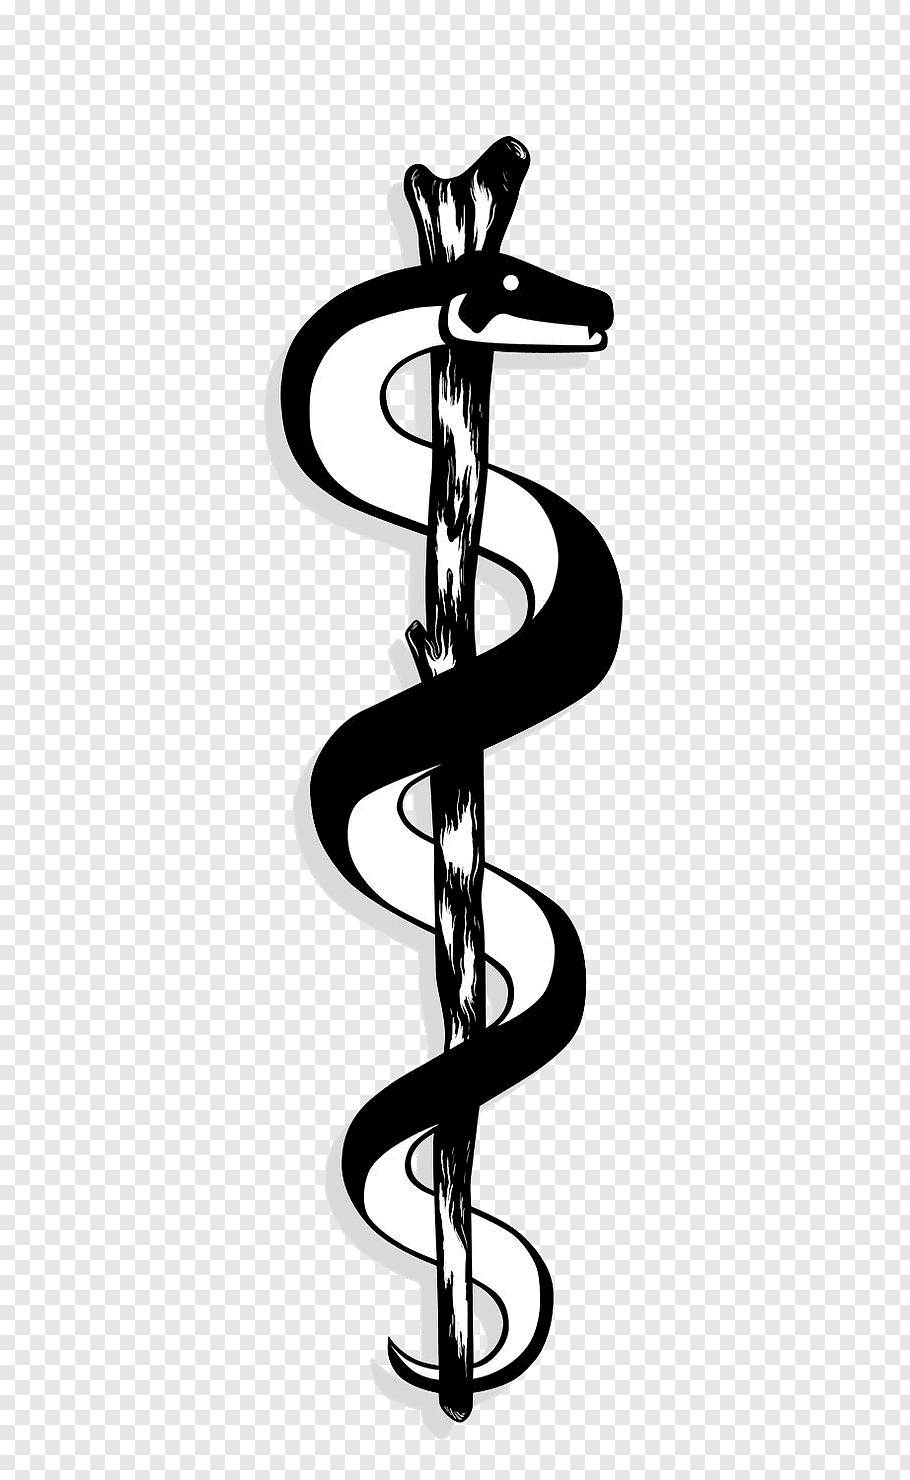 White and black caduceus logo, Apollo Rod of Asclepius Staff.